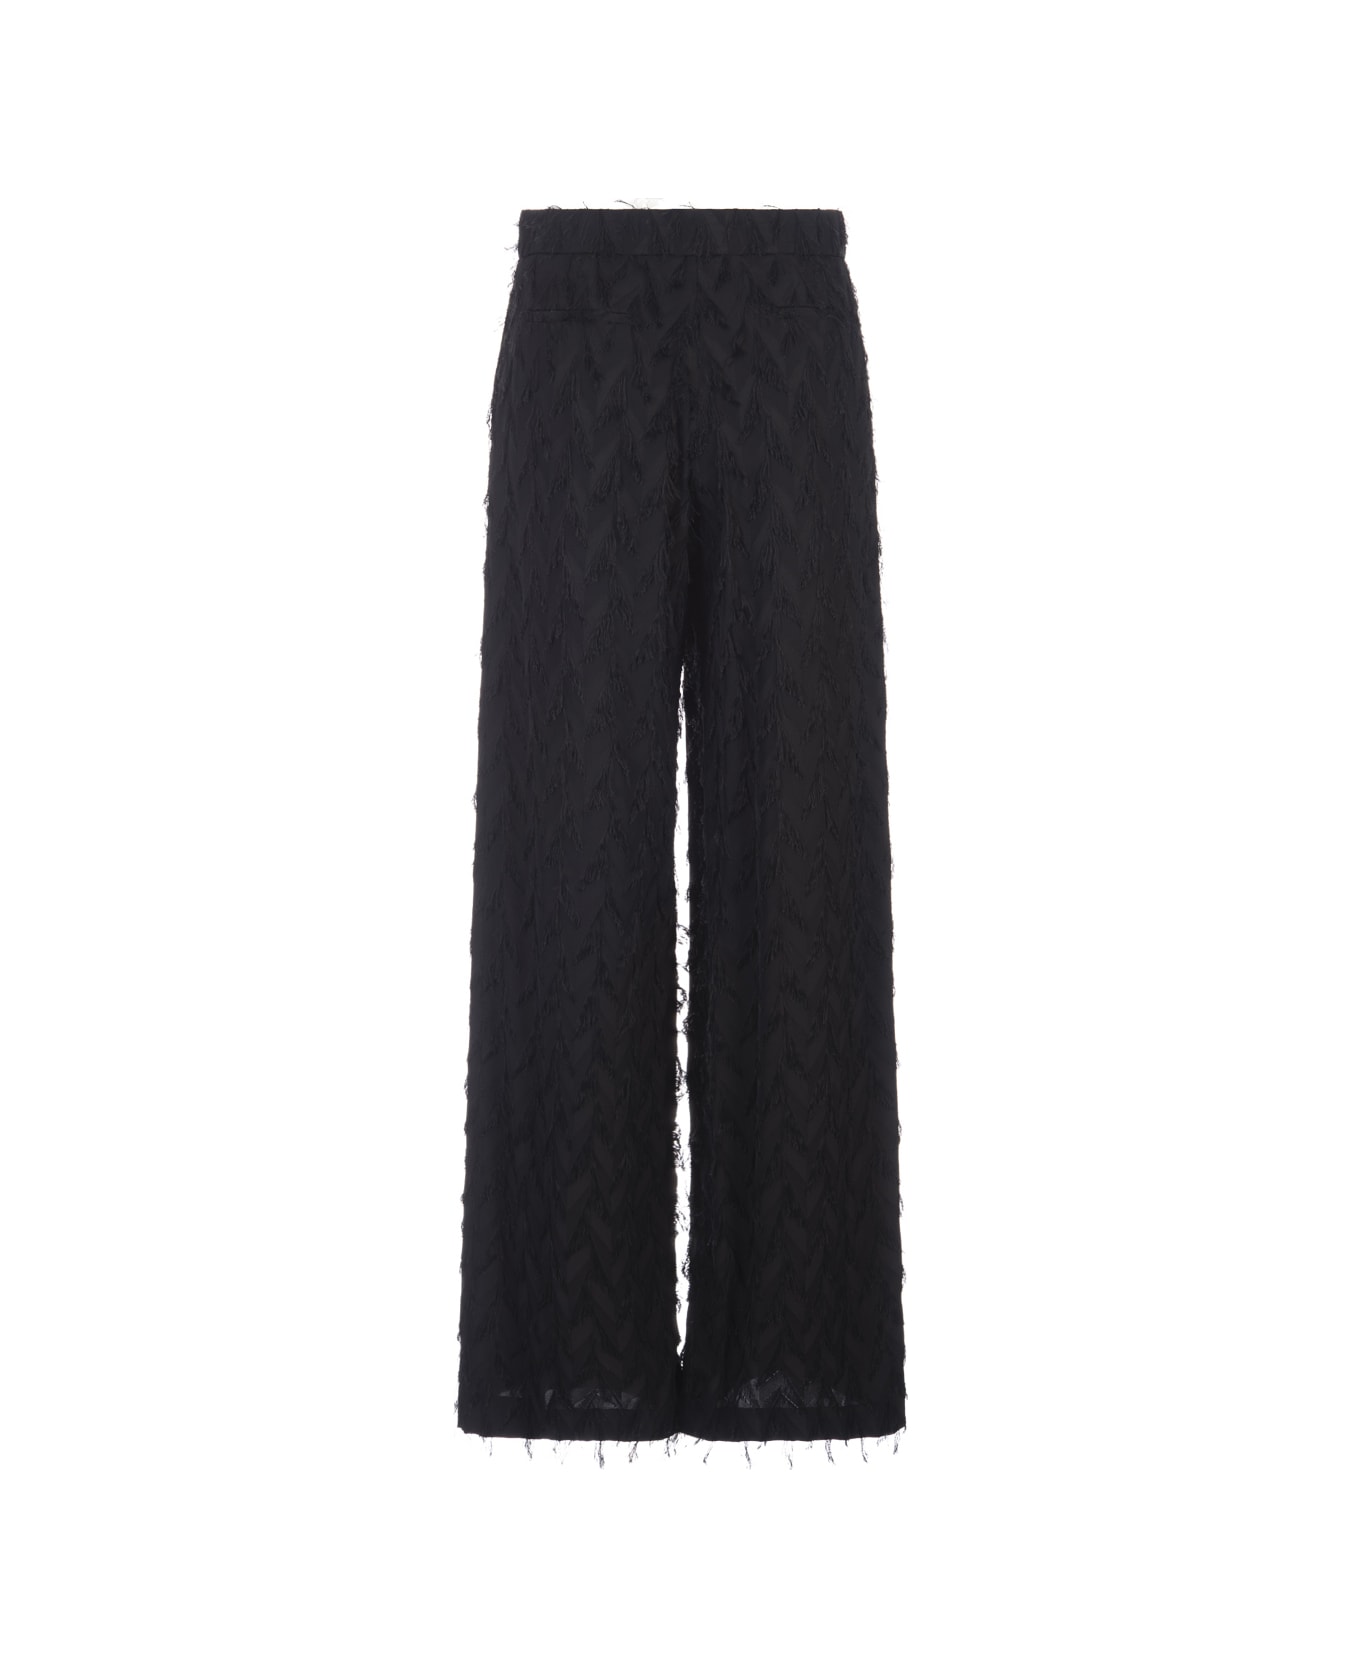 MSGM Wide Black Trousers In Fluid Viscose Fil Coupè Fabric - Black